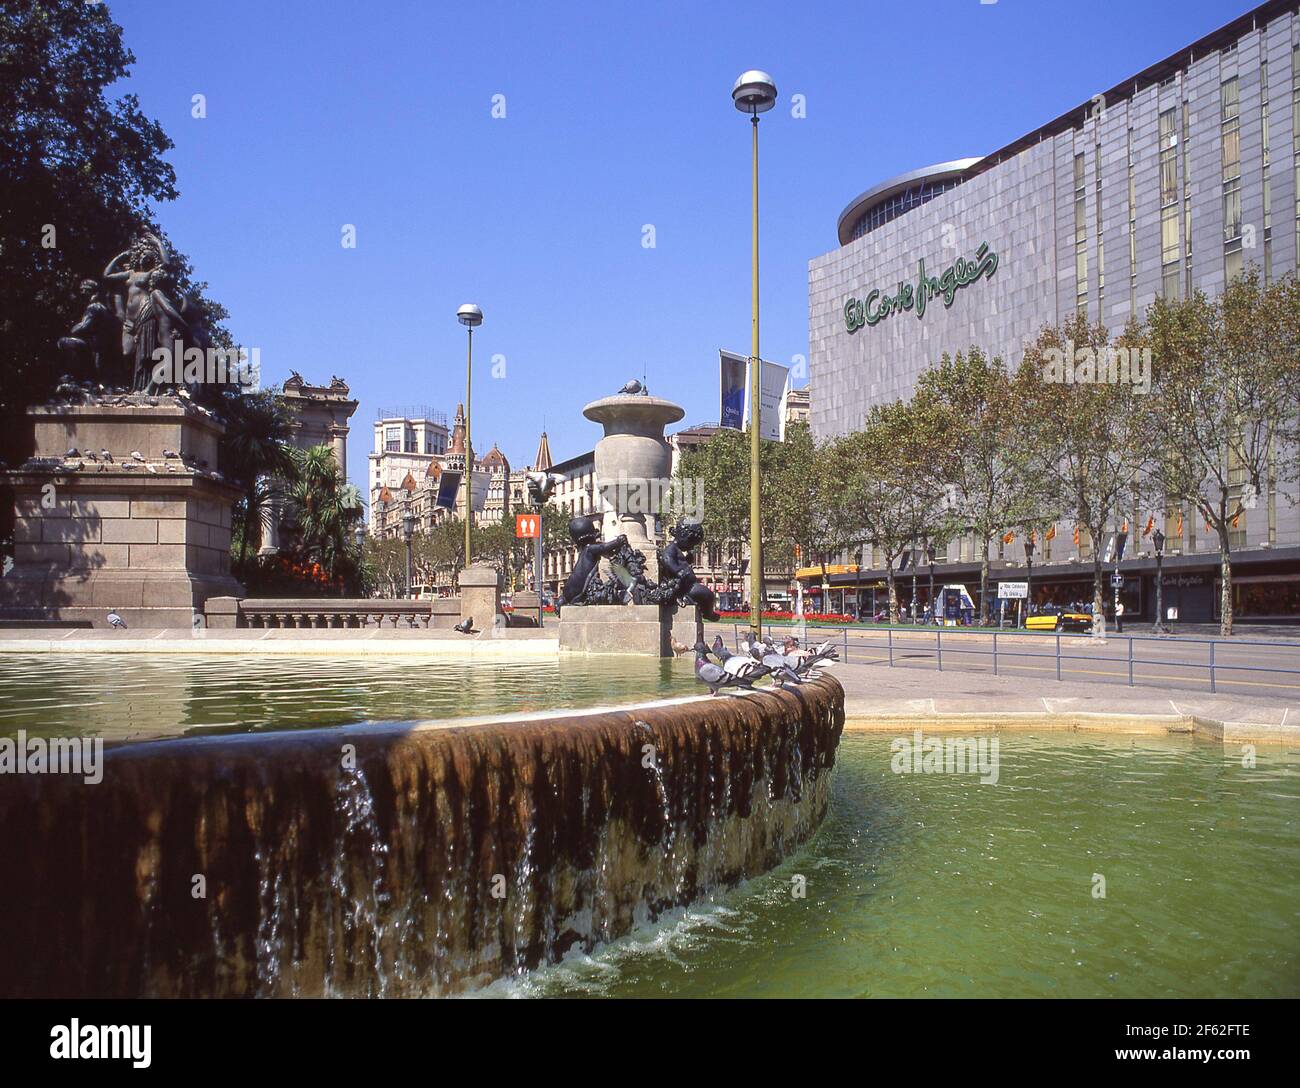 El Corte Ingles Kaufhaus und Brunnen bei Nacht, Plaça Catalunya, Barcelona, Provinz Barcelona, Katalonien, Spanien Stockfoto